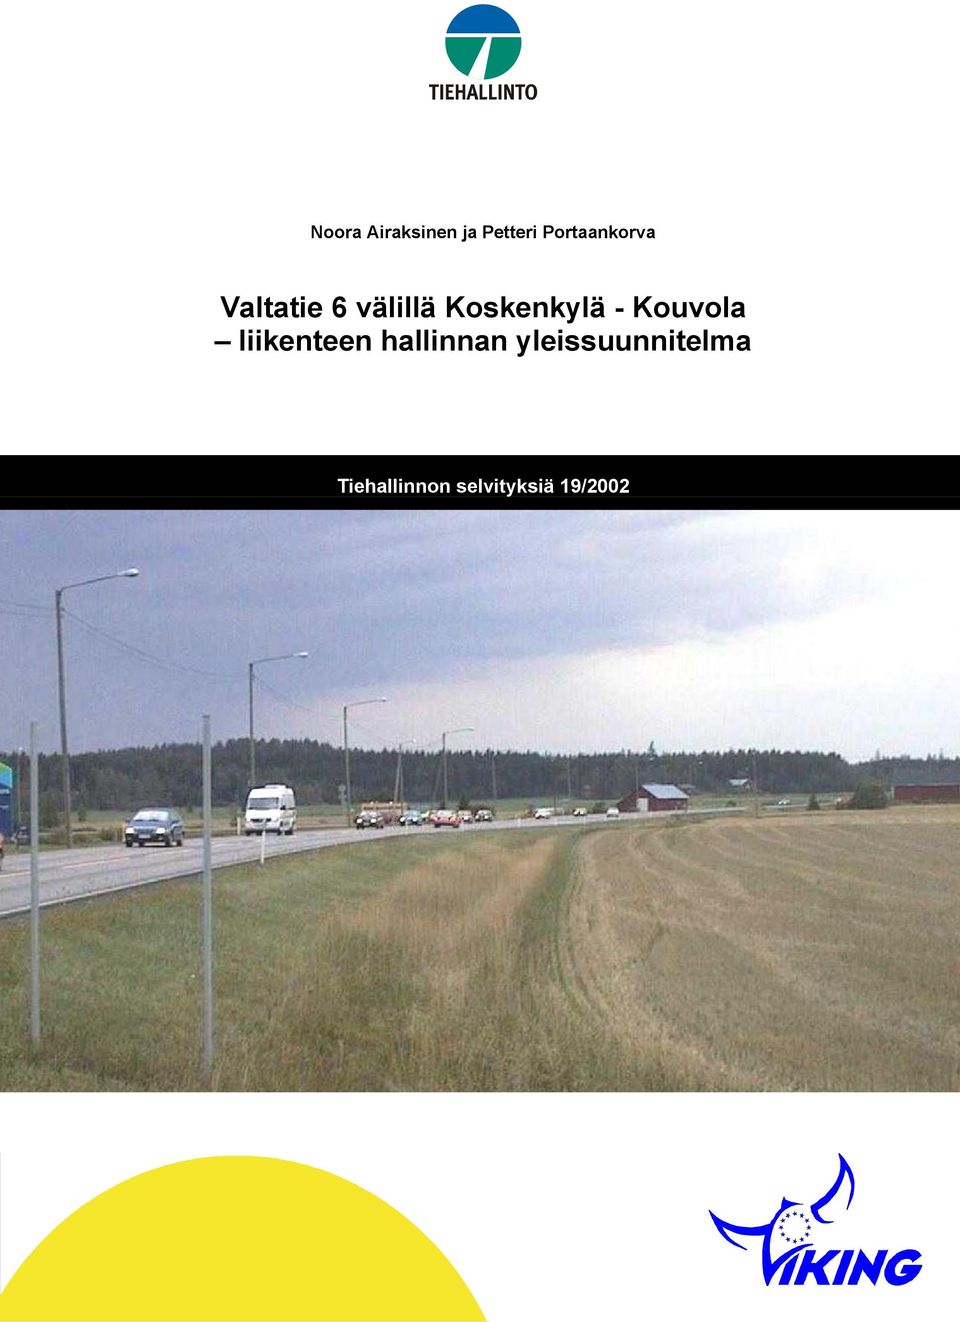 Koskenkylä - Kouvola liikenteen